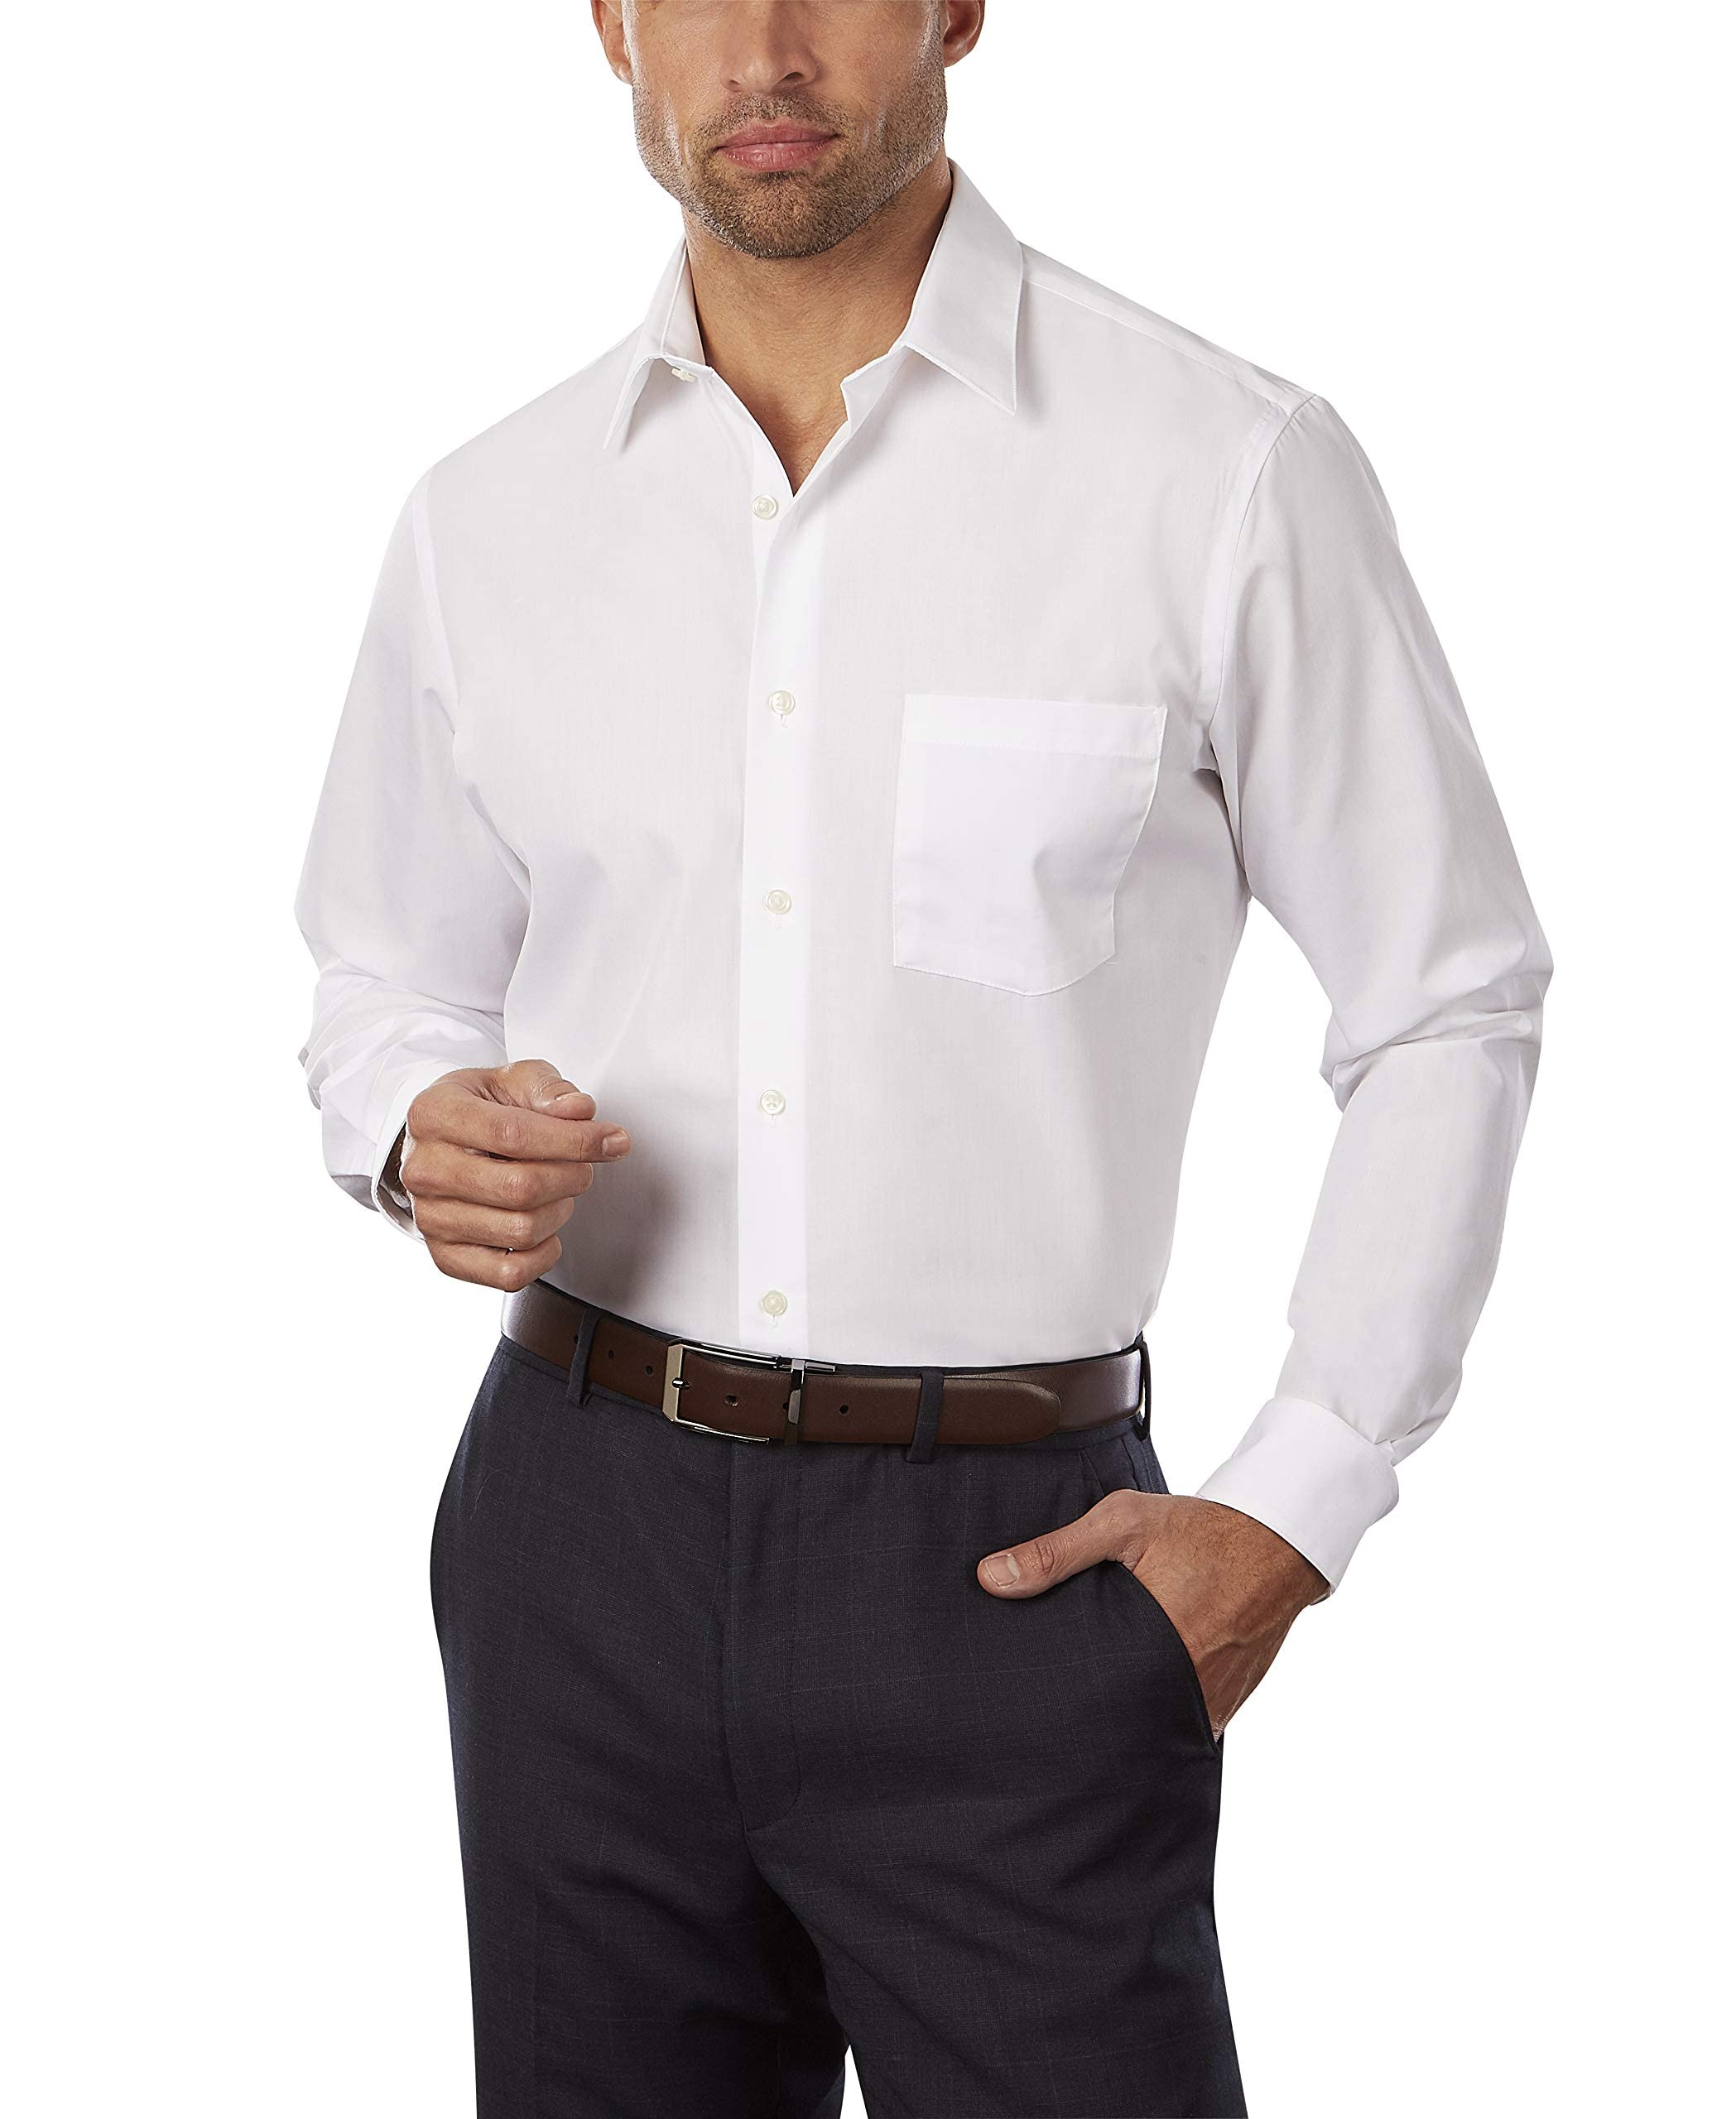 Van Heusen Men's Dress Shirt Fitted Poplin Solid, White, 15.5" Neck 32"-33" Sleeve